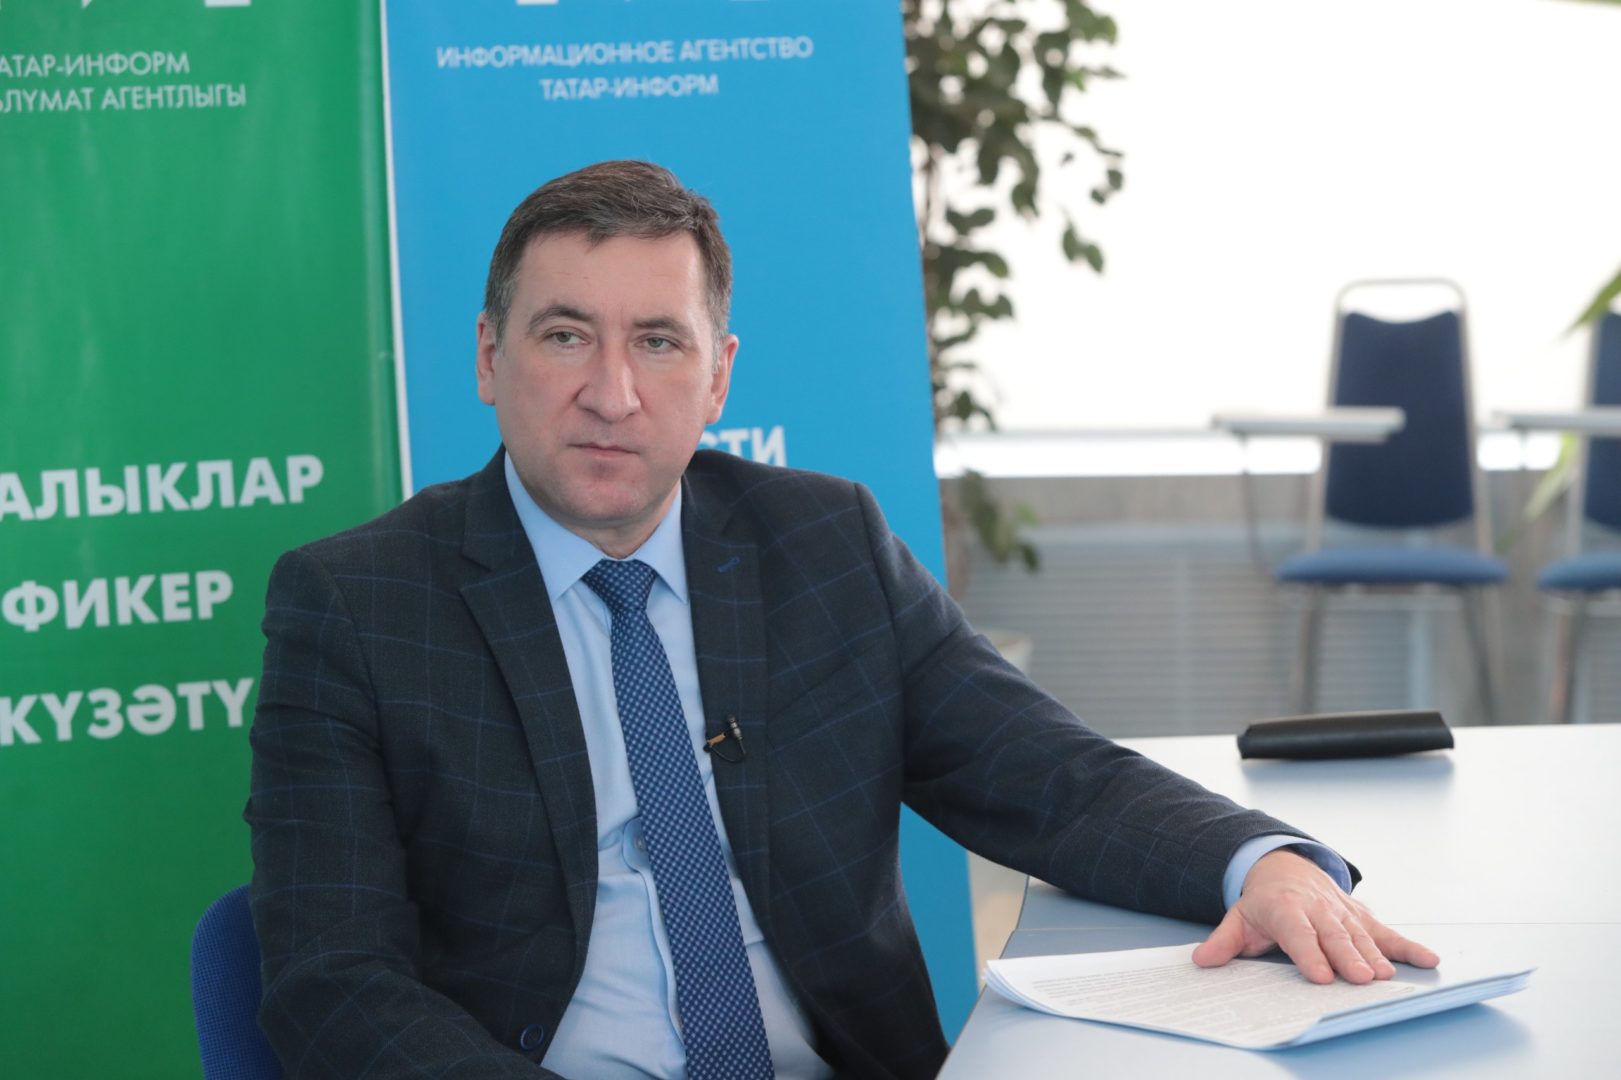 Айдар Салихов: «Татарстан – лидер по электронным услугам, полученным предпринимателями»